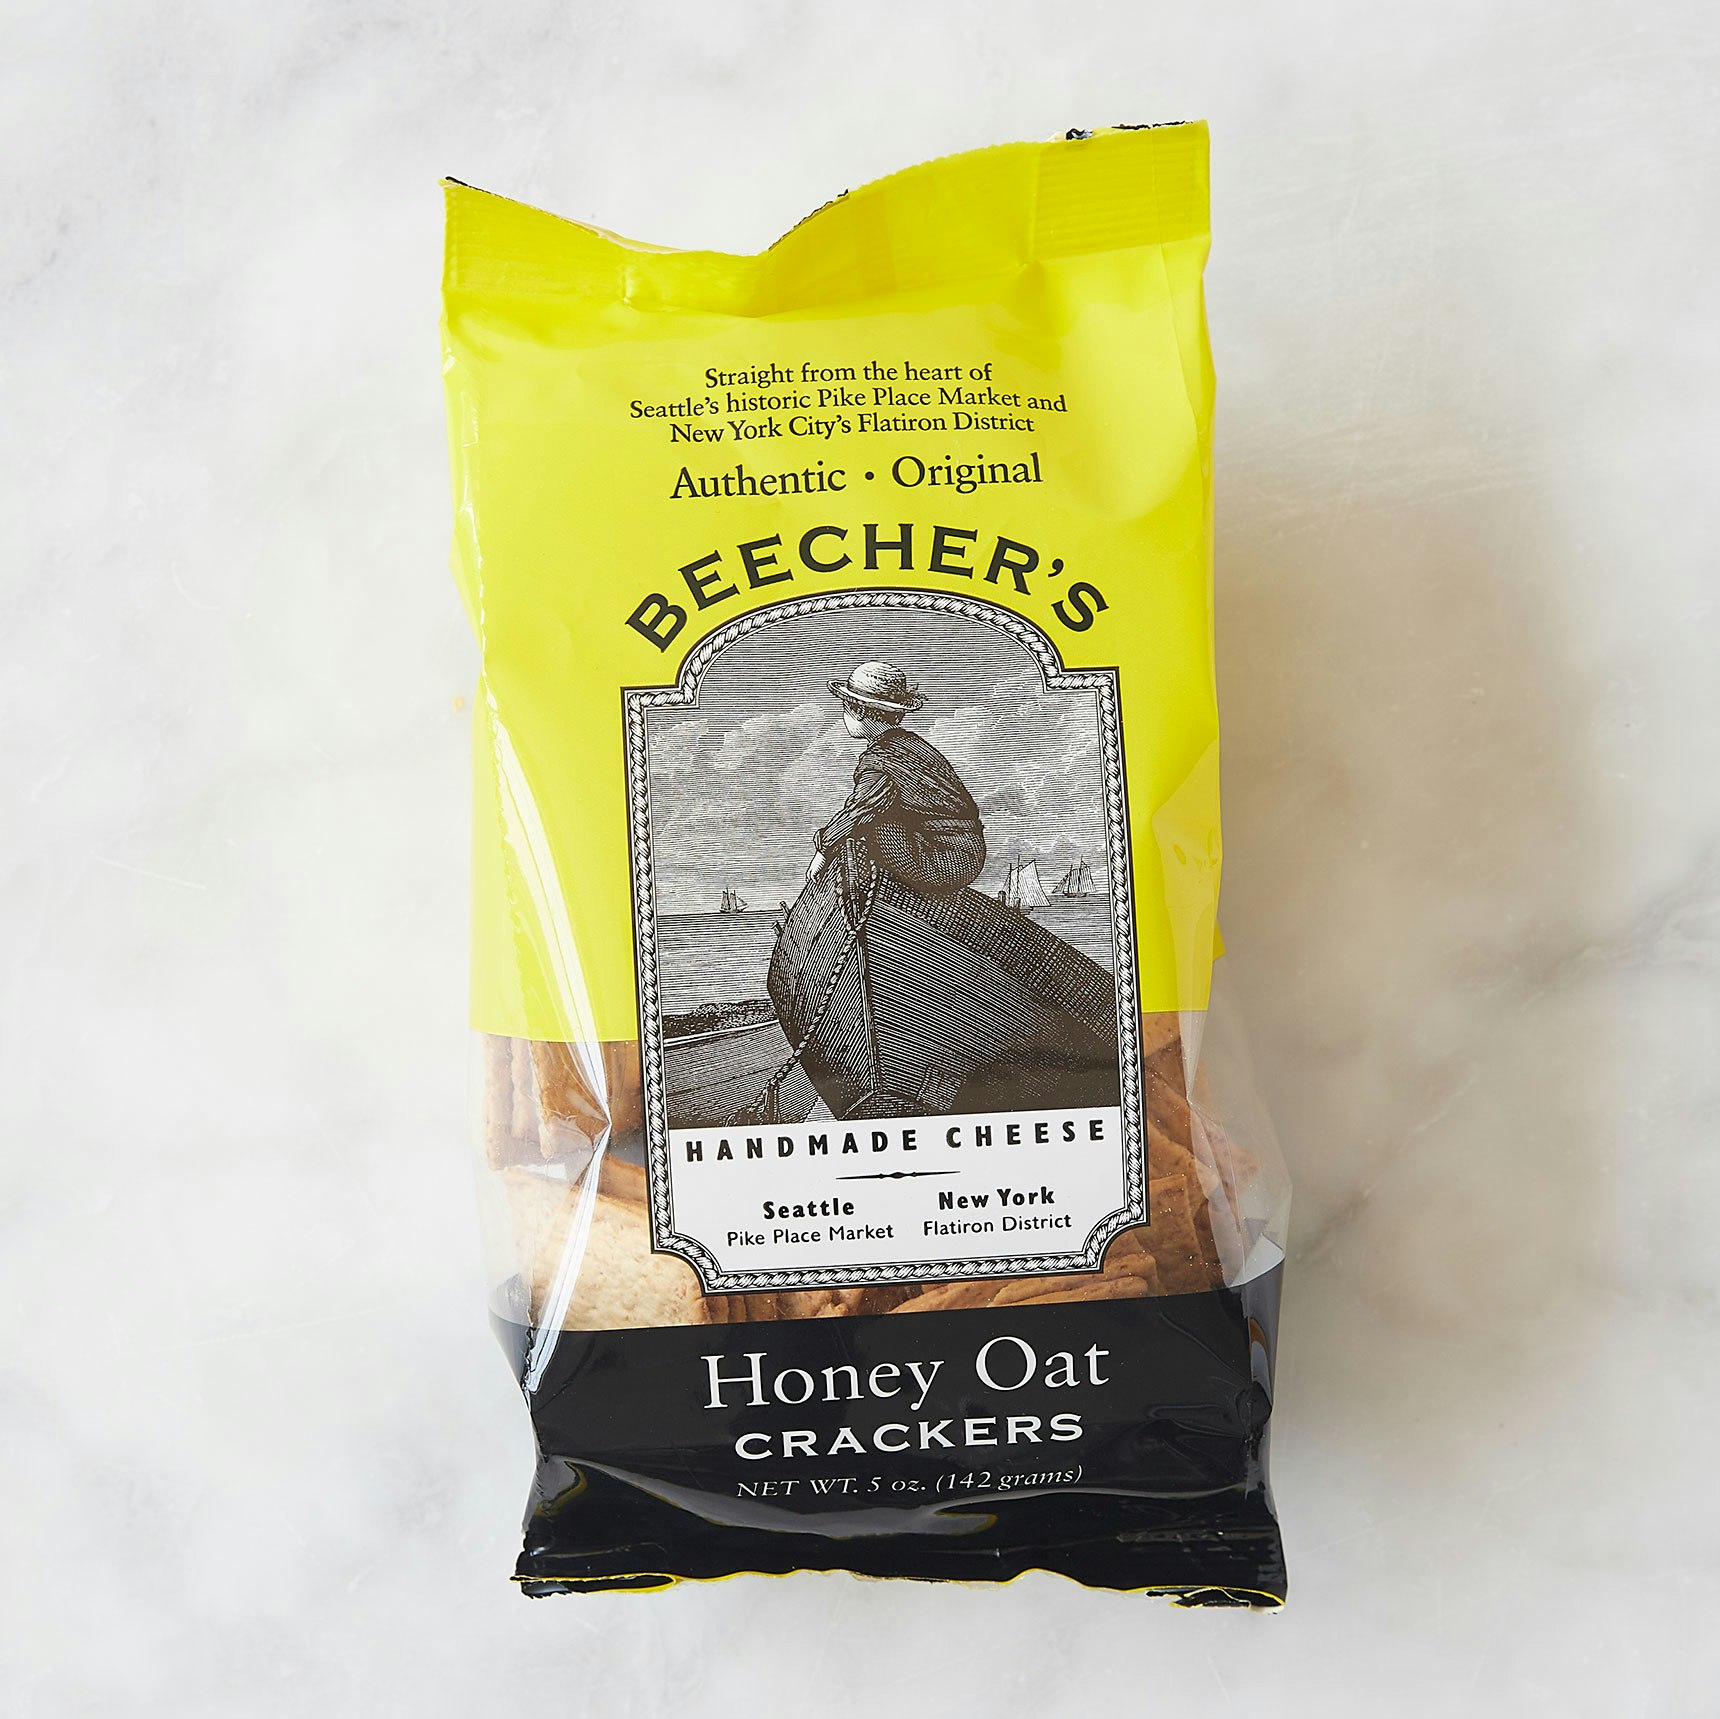 Beecher's Honey Oat Crackers